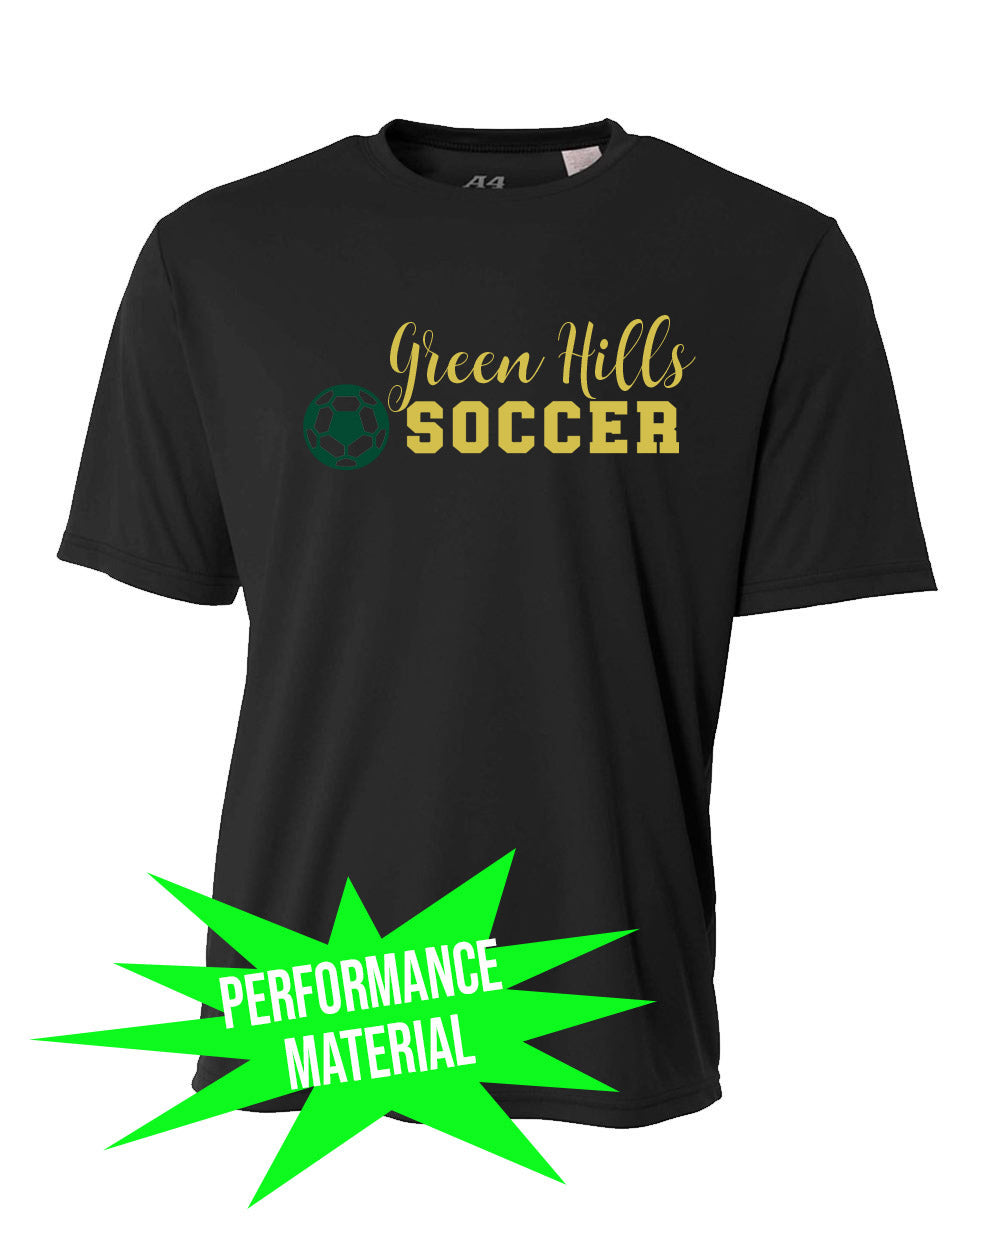 Green Hills Soccer Performance Material design 3 T-Shirt